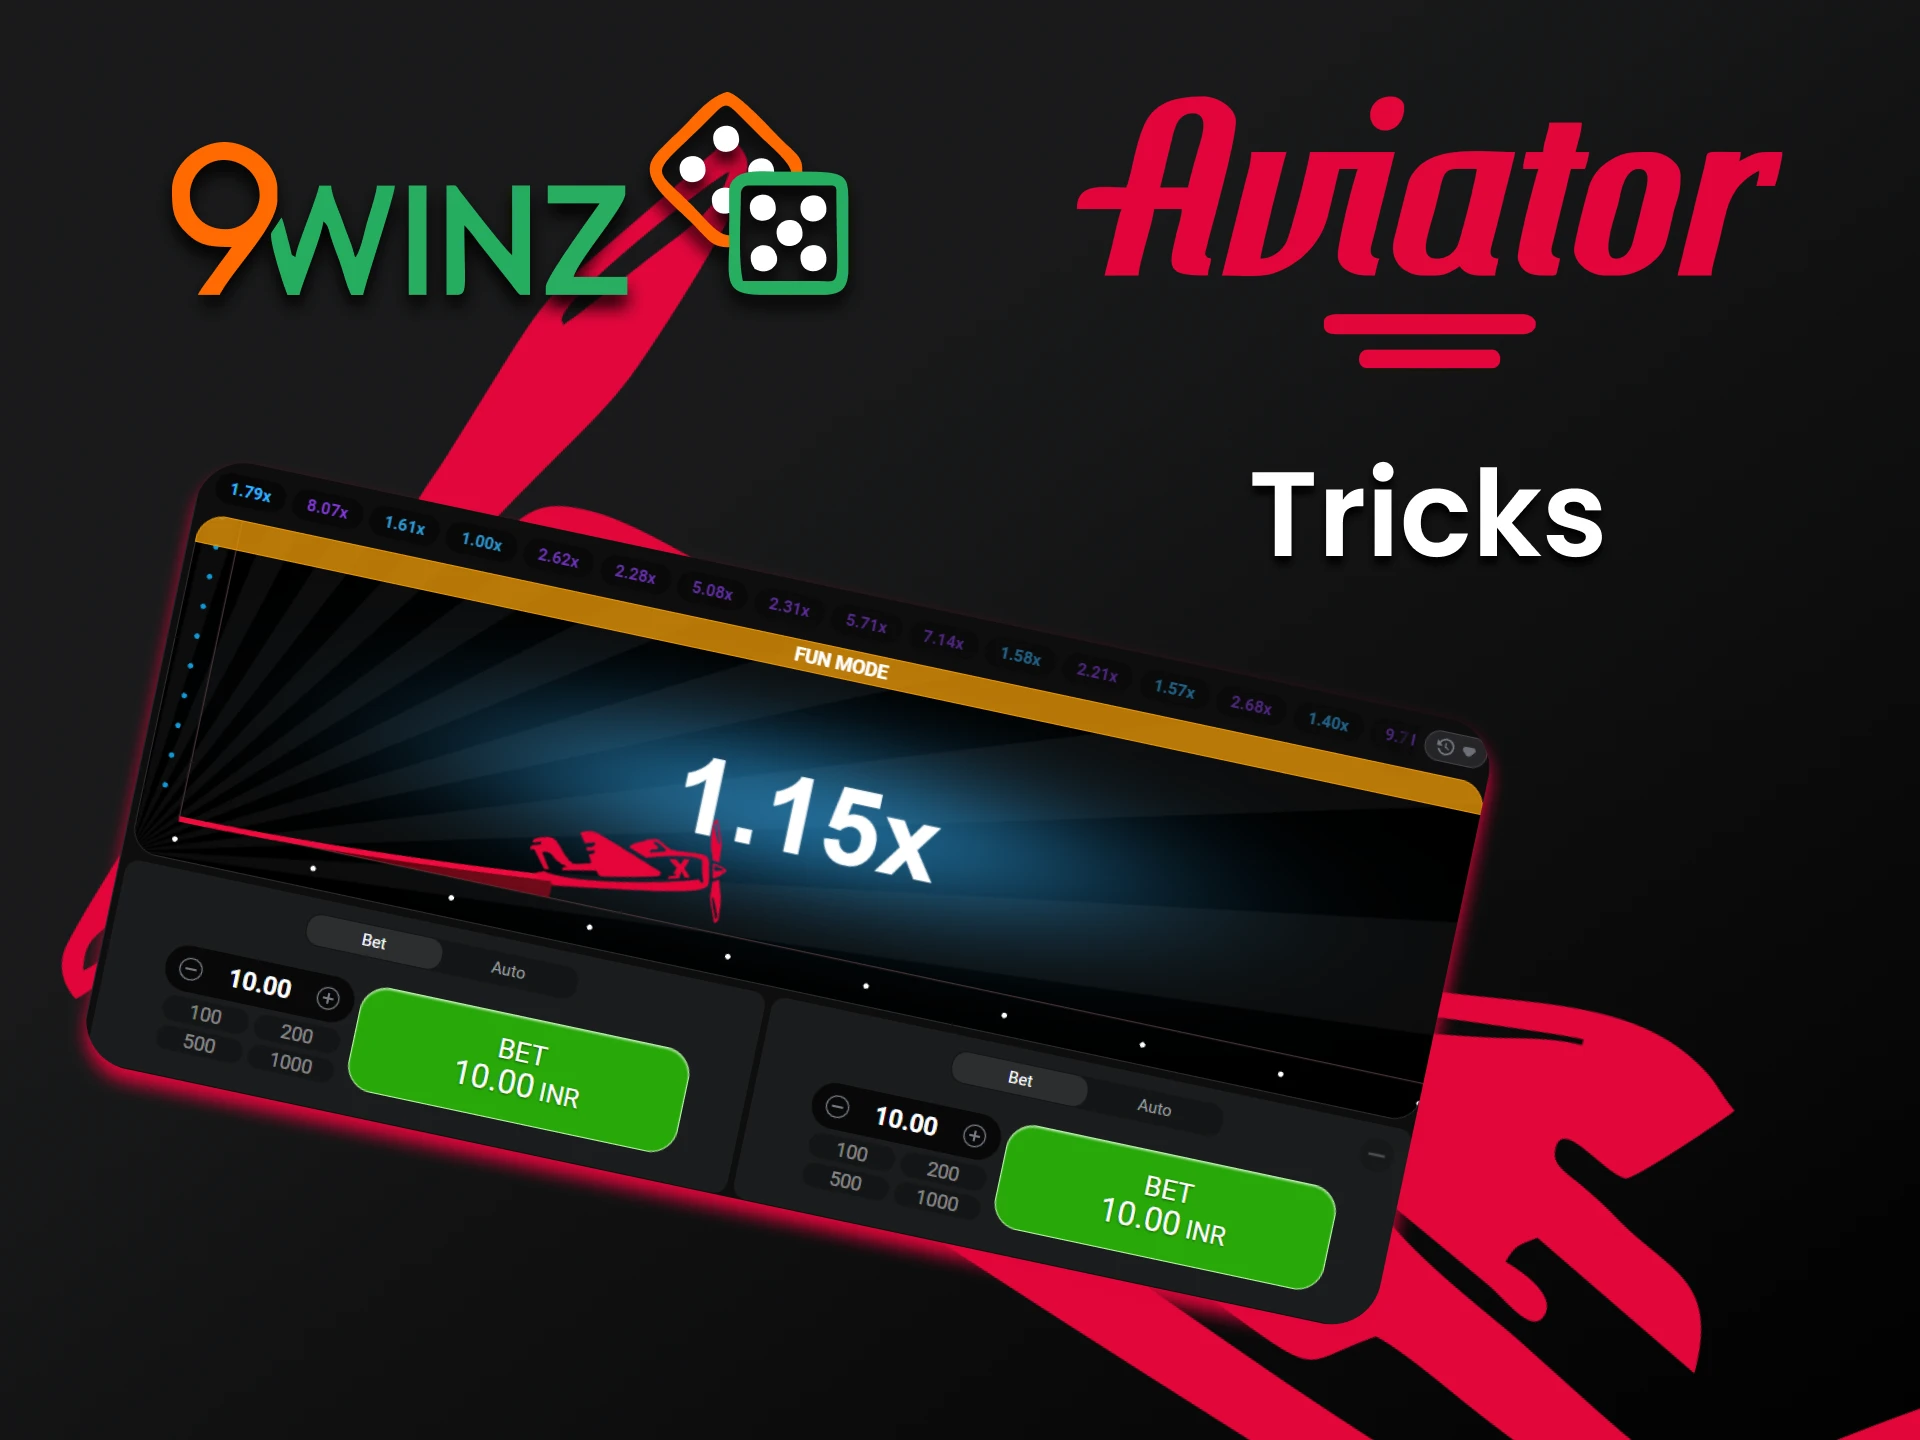 Aprenda os possíveis truques para ganhar o Aviator na 9winz.